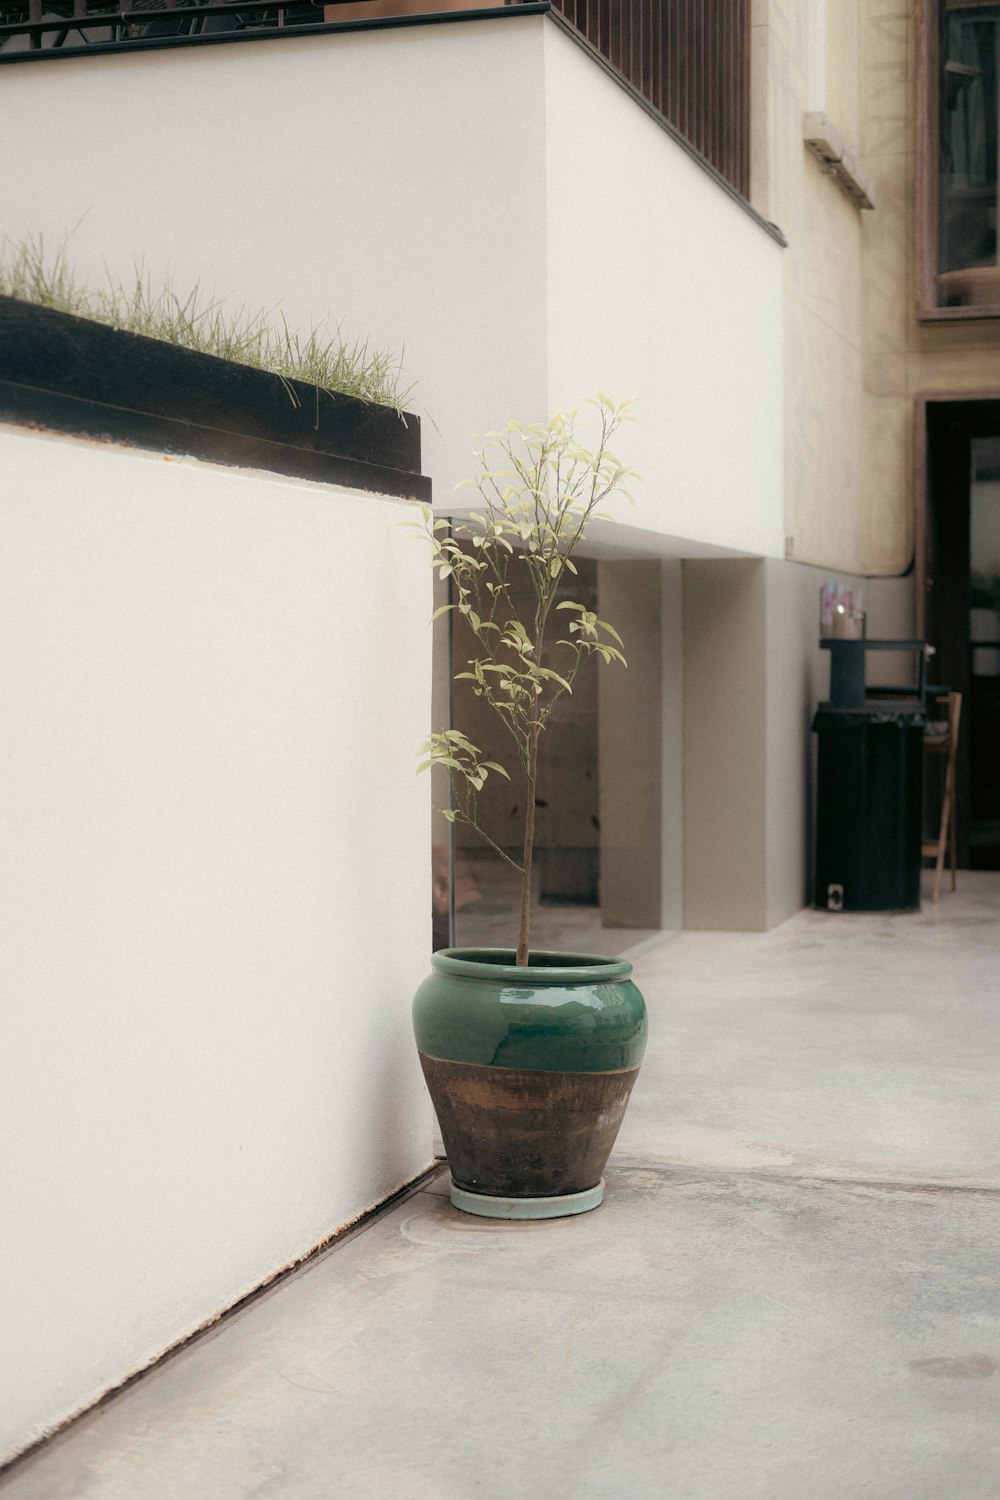 una planta en maceta sentada en el costado de un edificio